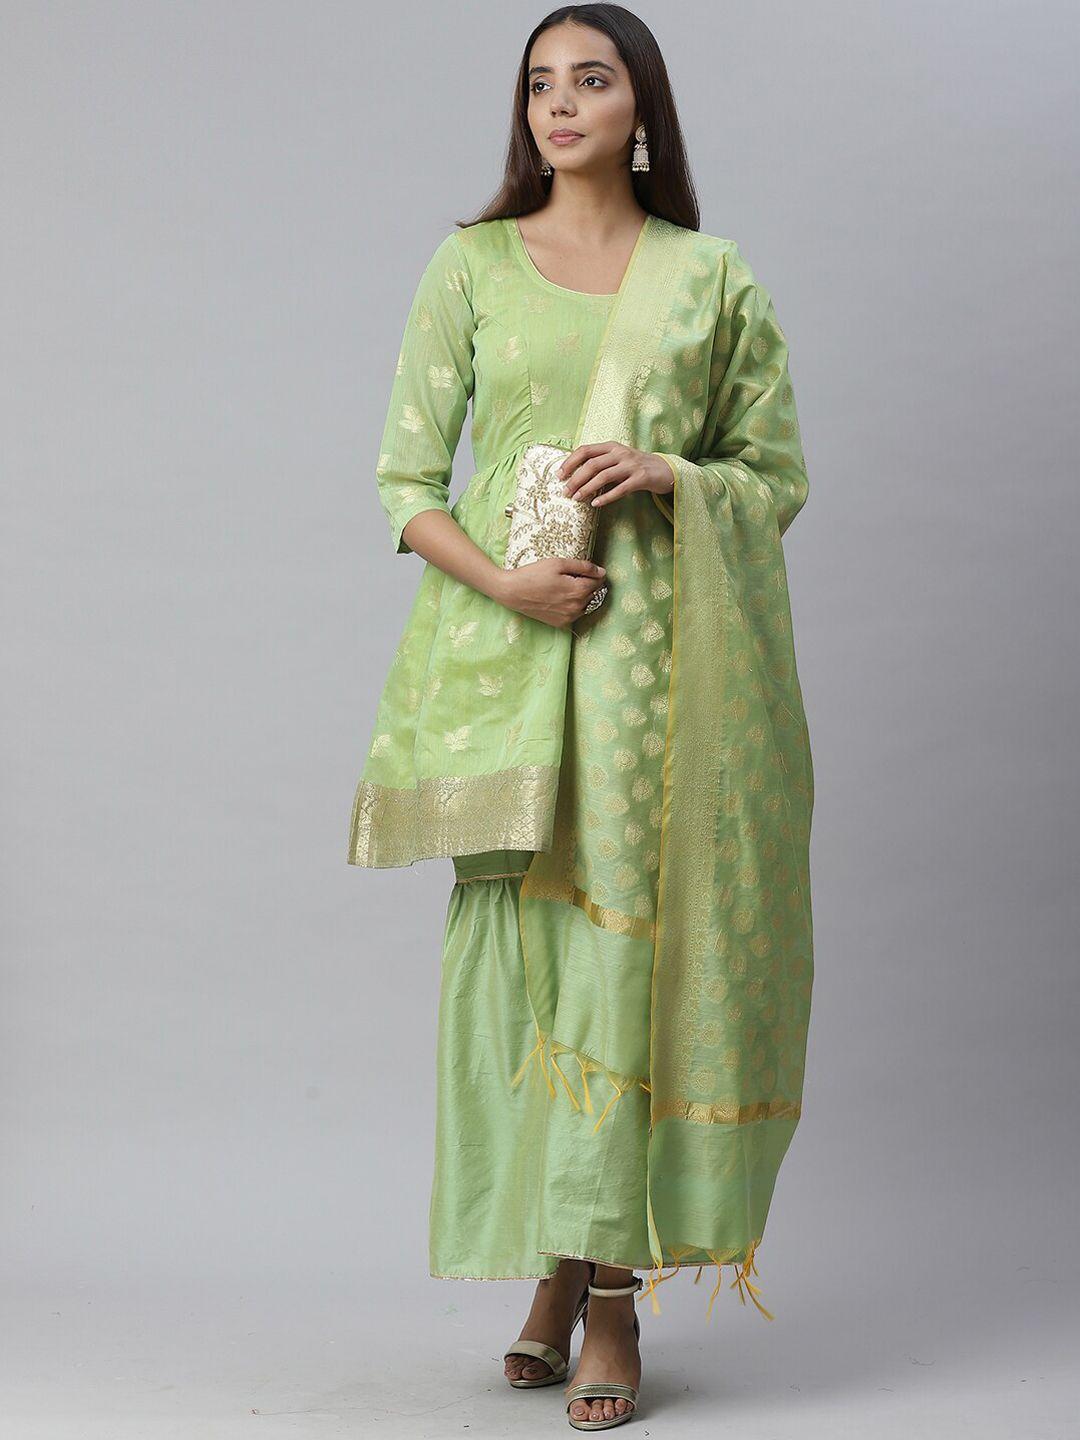 chhabra 555 women green woven design handloom banarasi kurta with sharara & dupatta